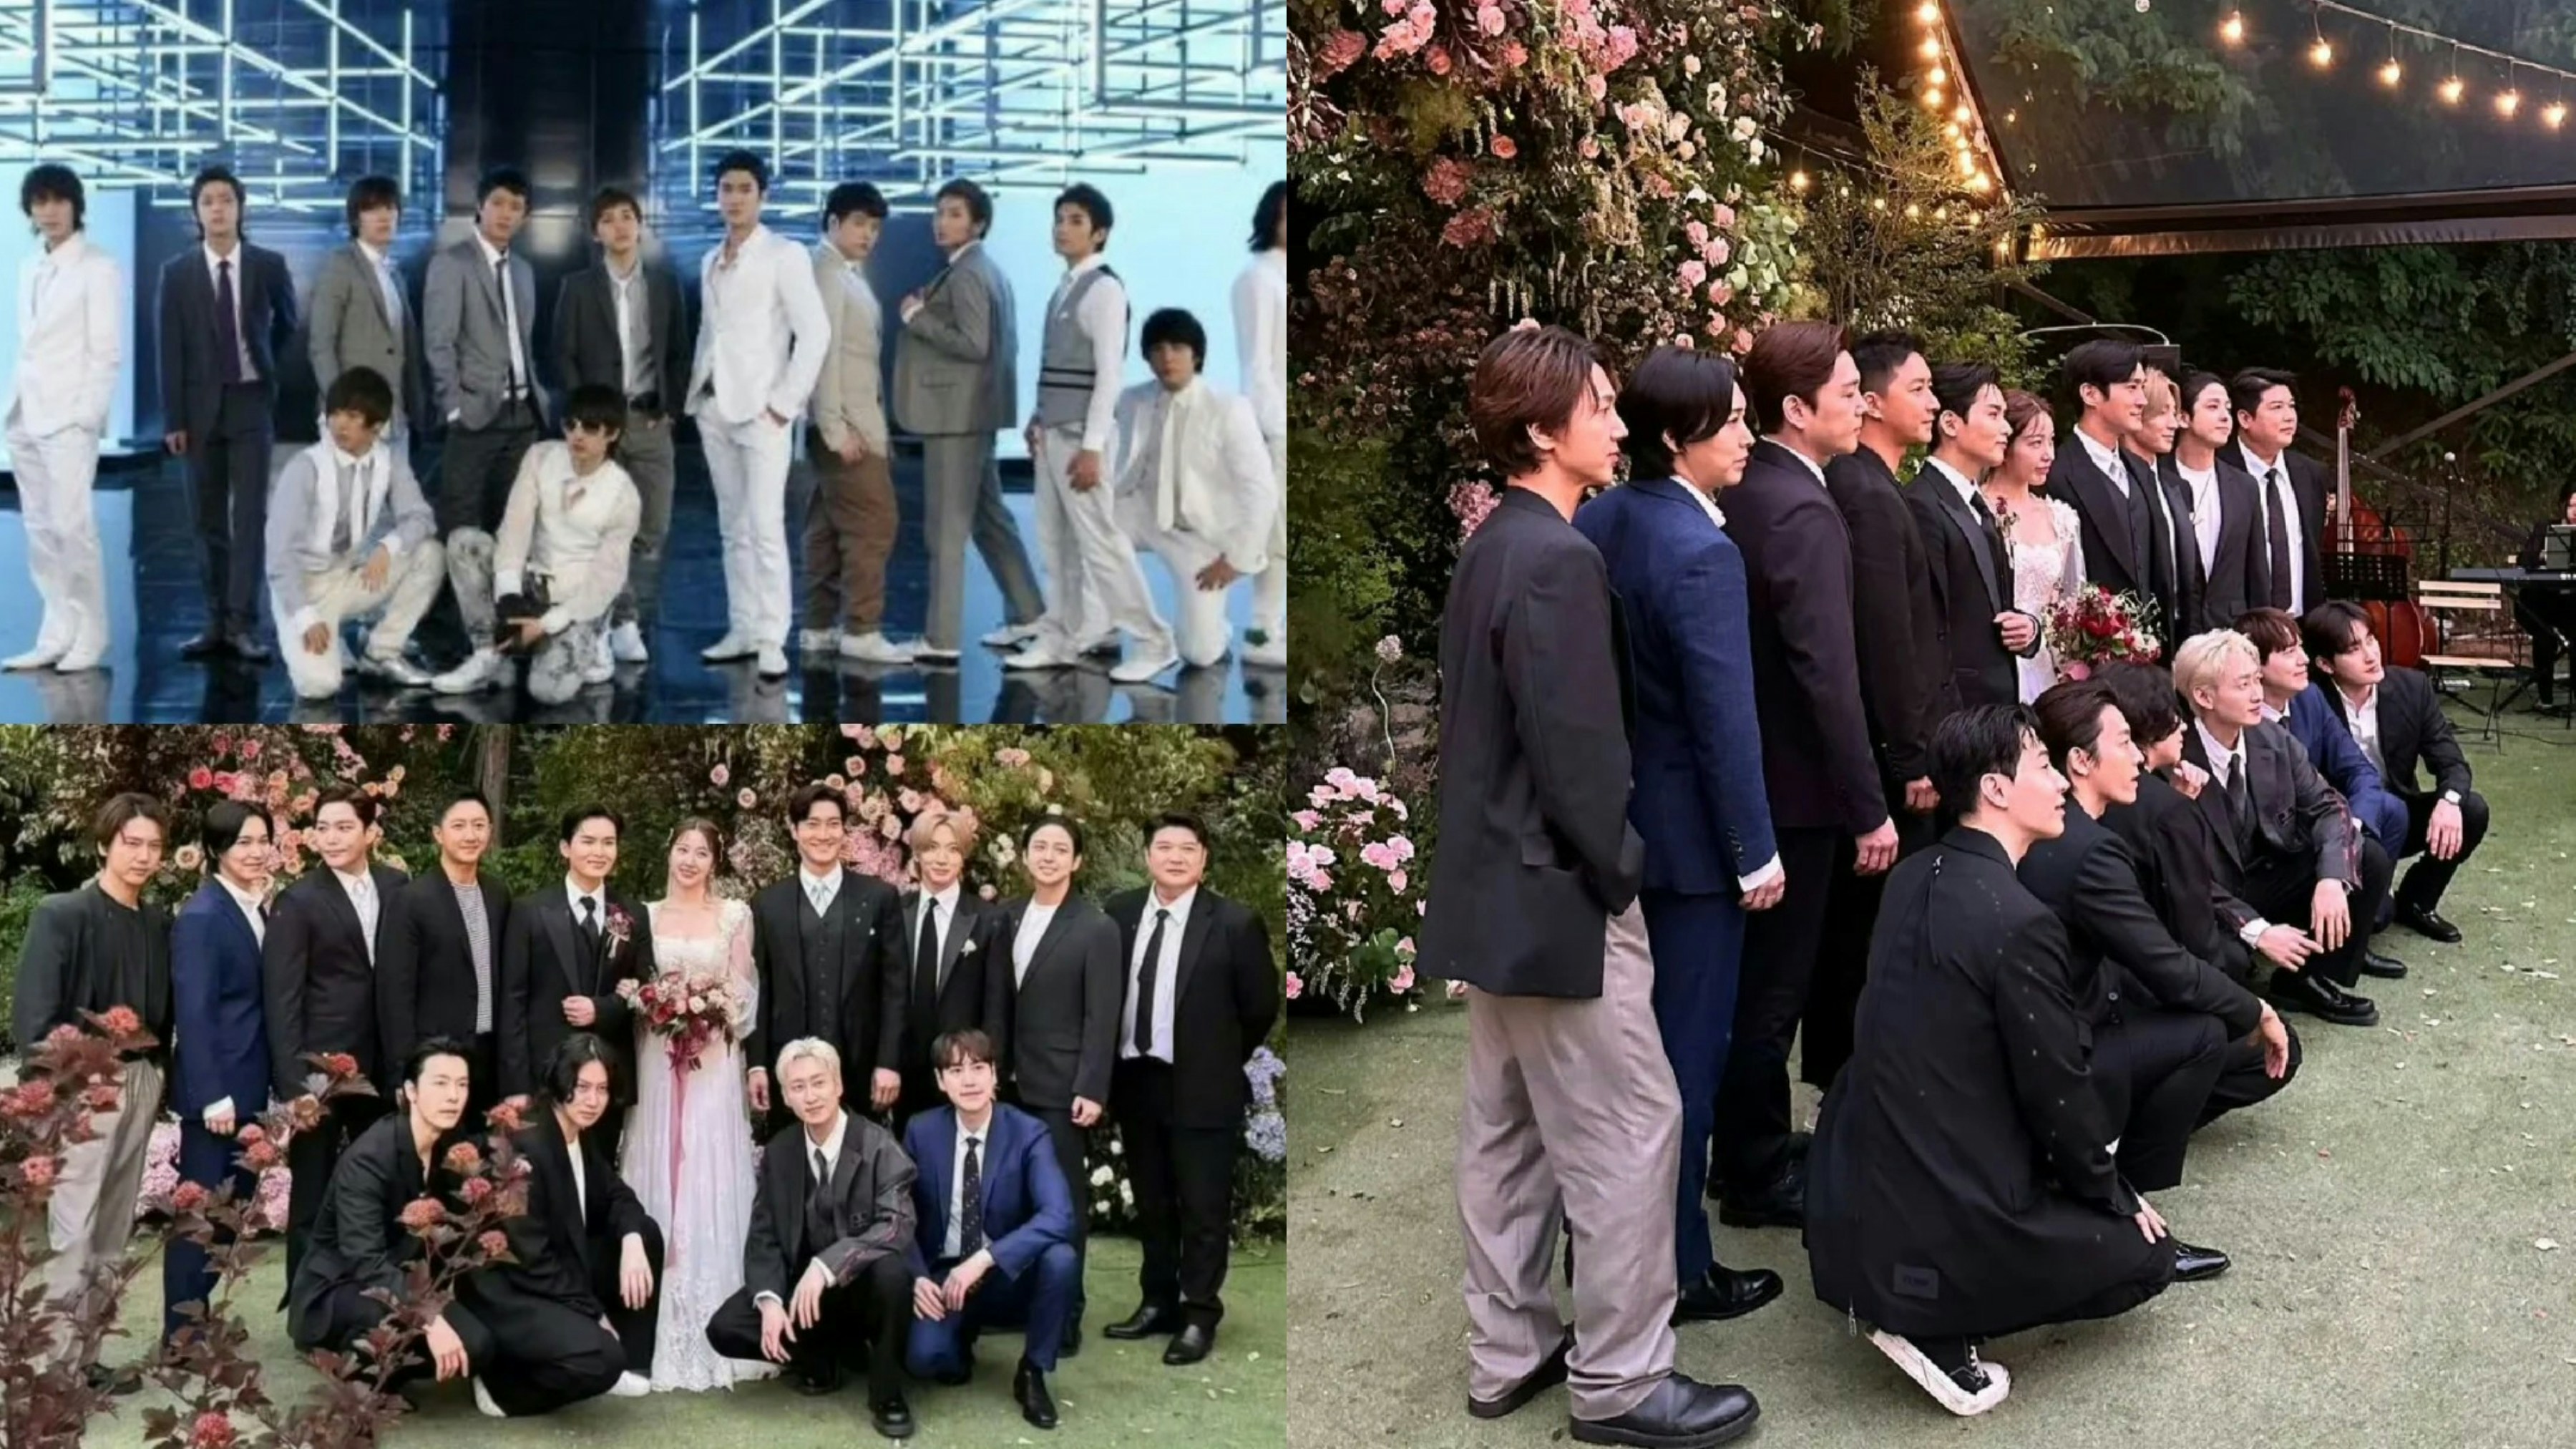 Les membres de Super Junior ont connu de nombreux changements depuis leurs débuts il y a 18 ans, et sont finalement tous apparus lorsque Ryeowook s’est marié.